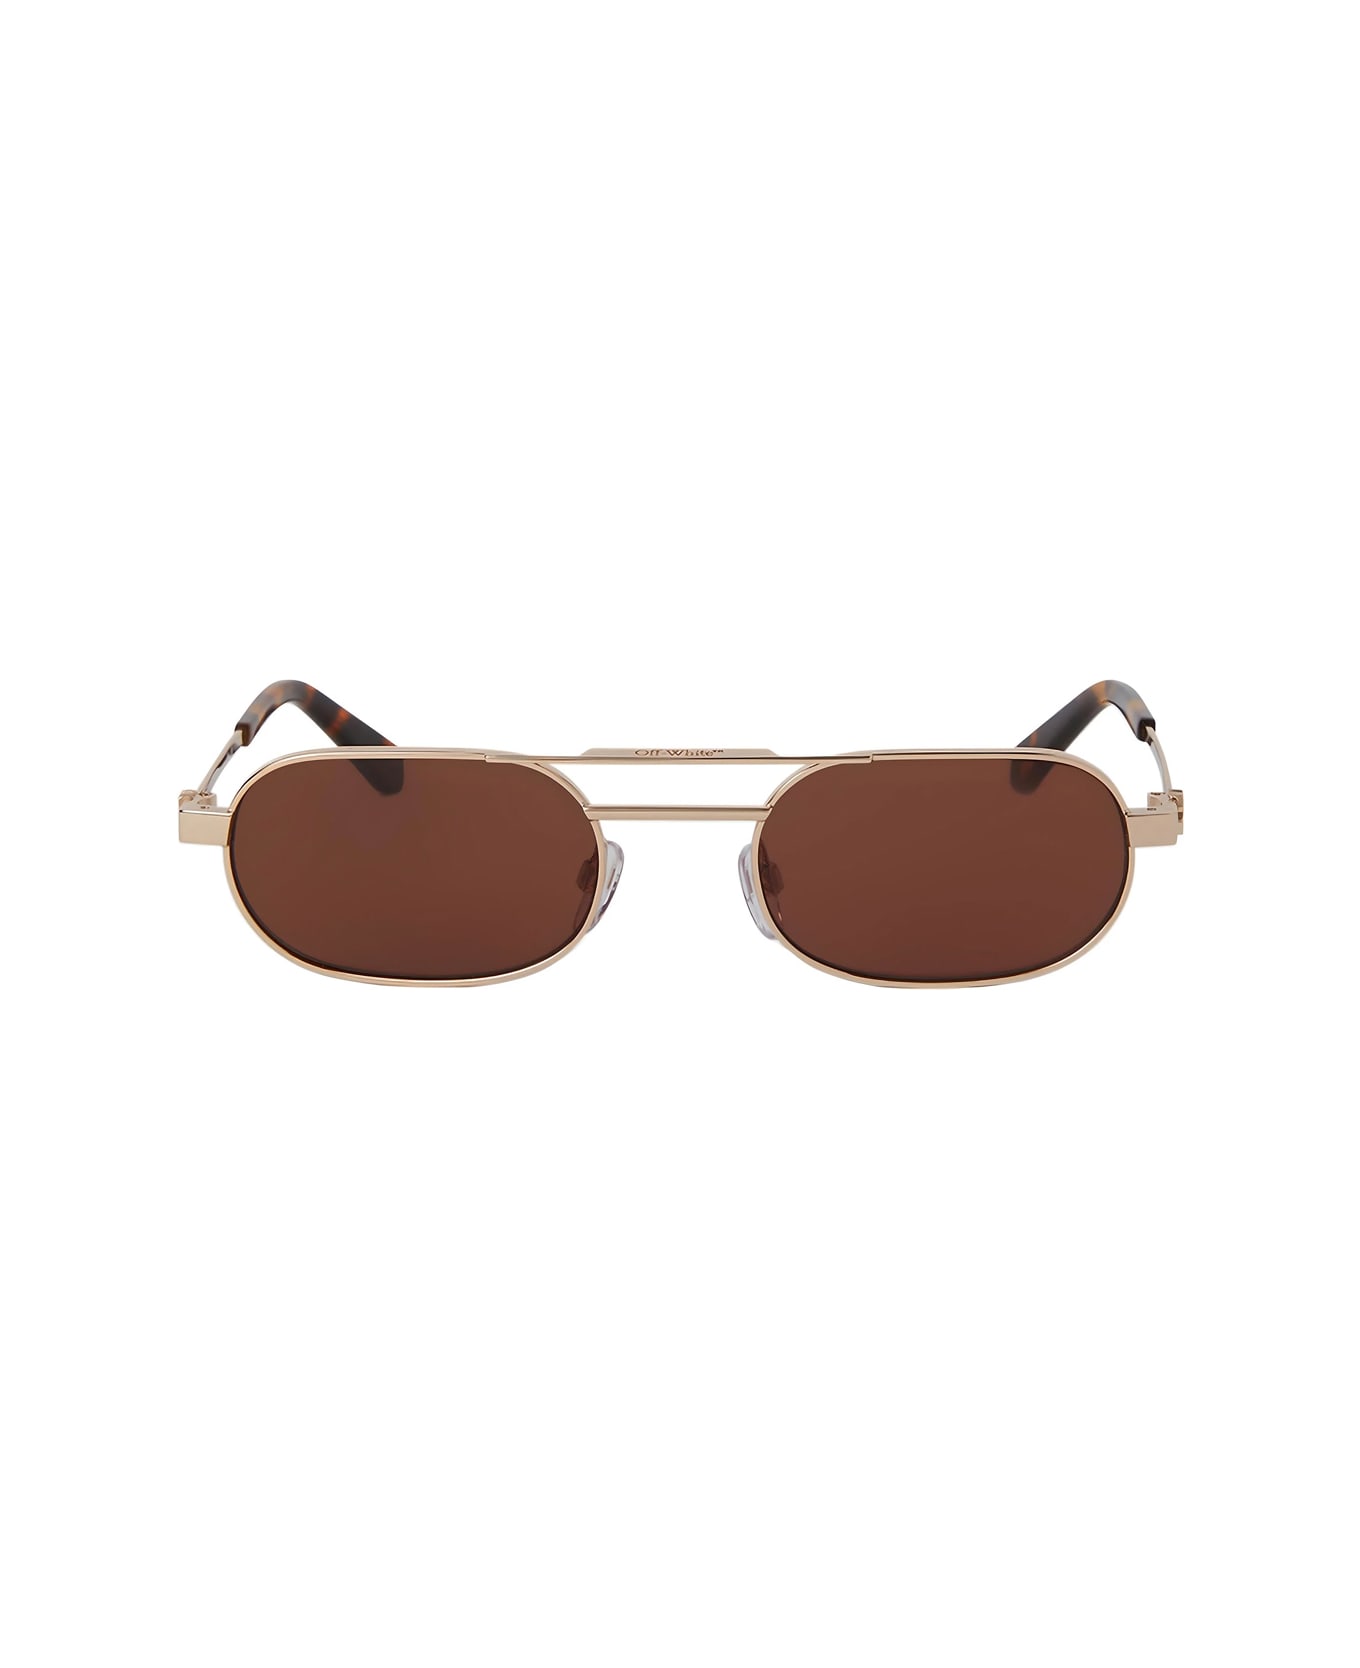 Off-White Oeri123 Vaiden 7664 Gold Brown Sunglasses - Oro サングラス